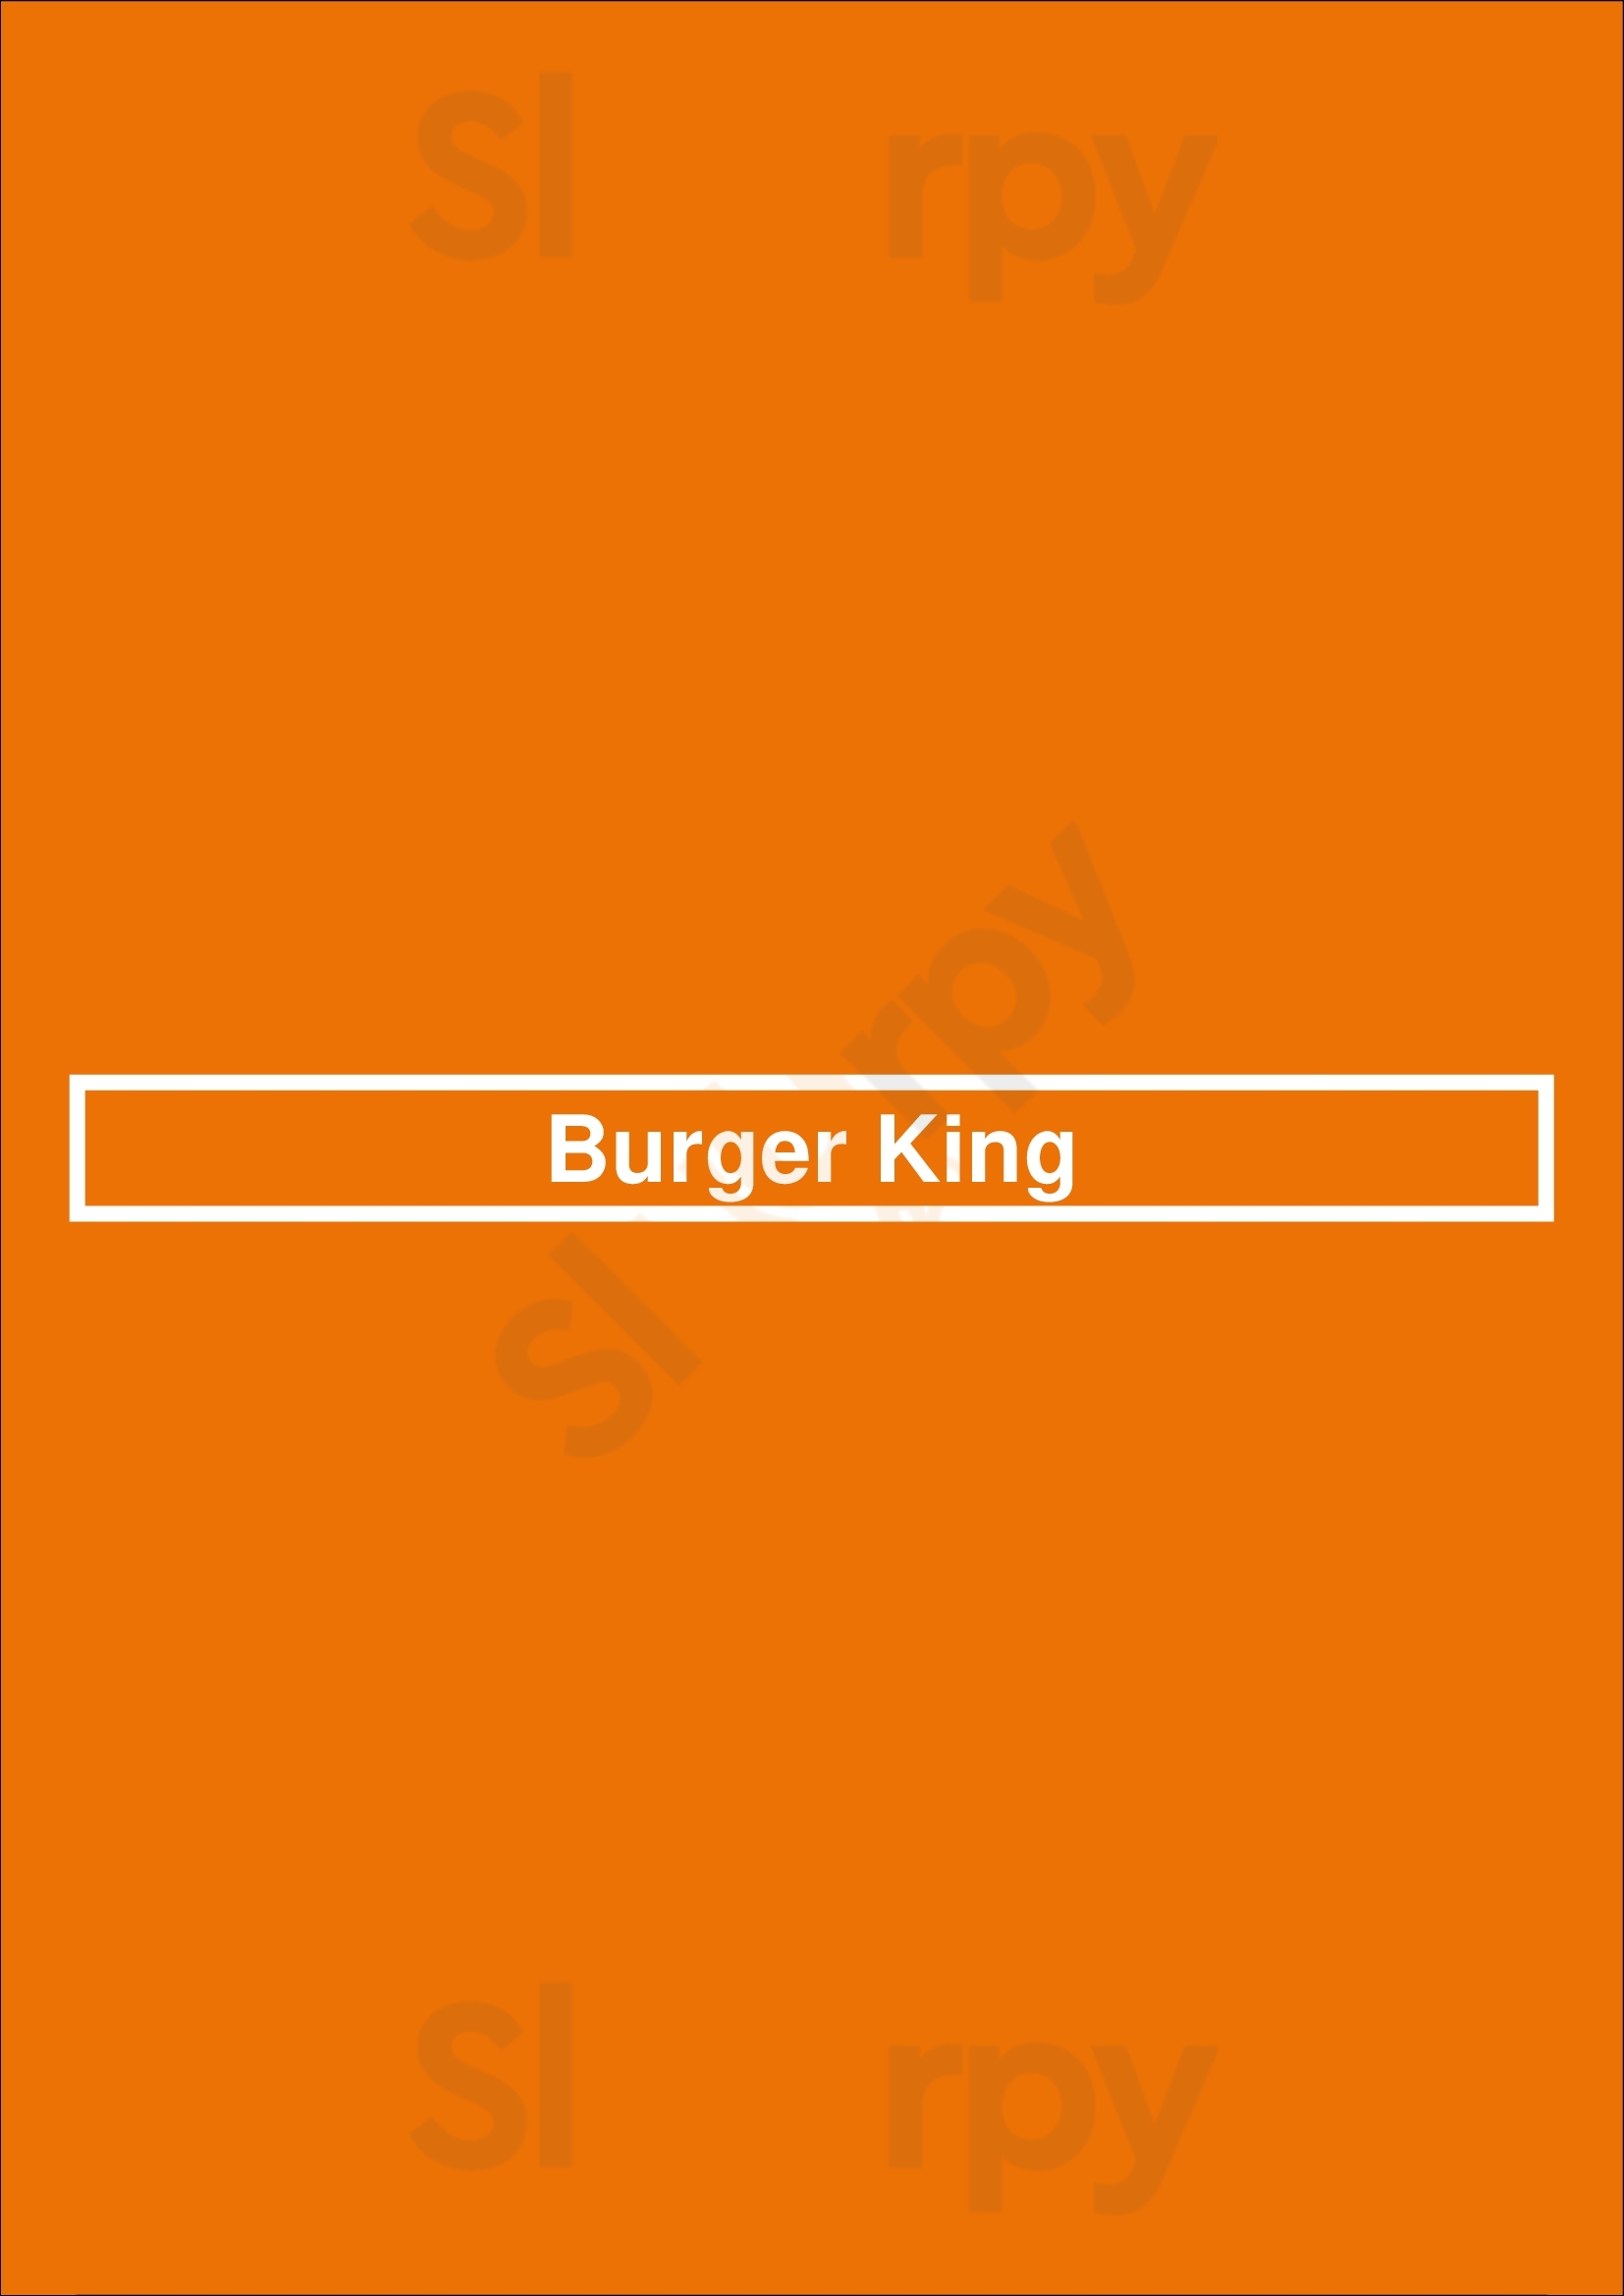 Burger King Las Vegas Menu - 1